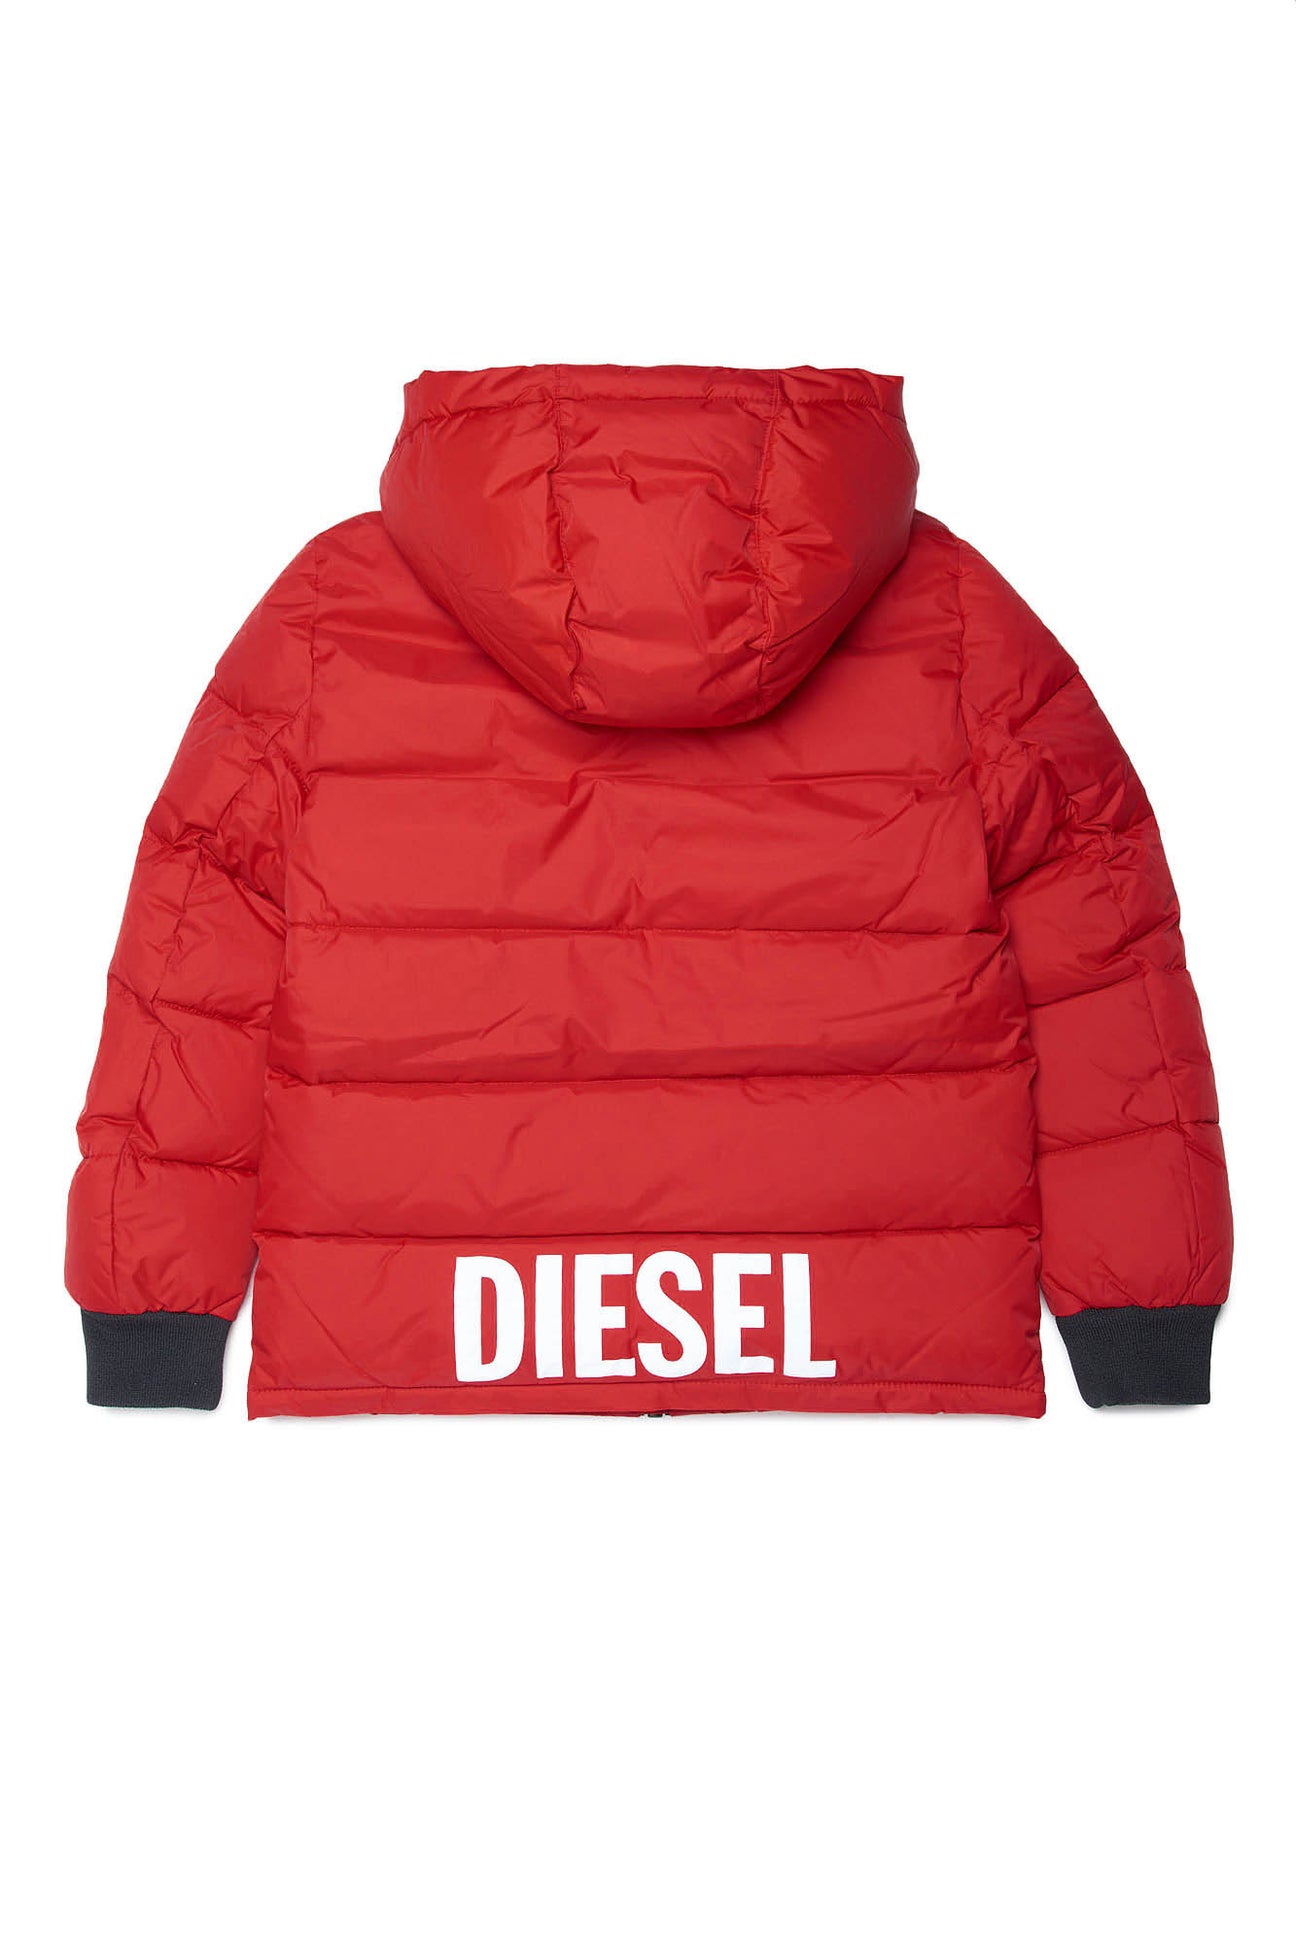 Chaqueta de plumón roja con el logotipo de Diesel  Chaqueta de plumón roja con el logotipo de Diesel 